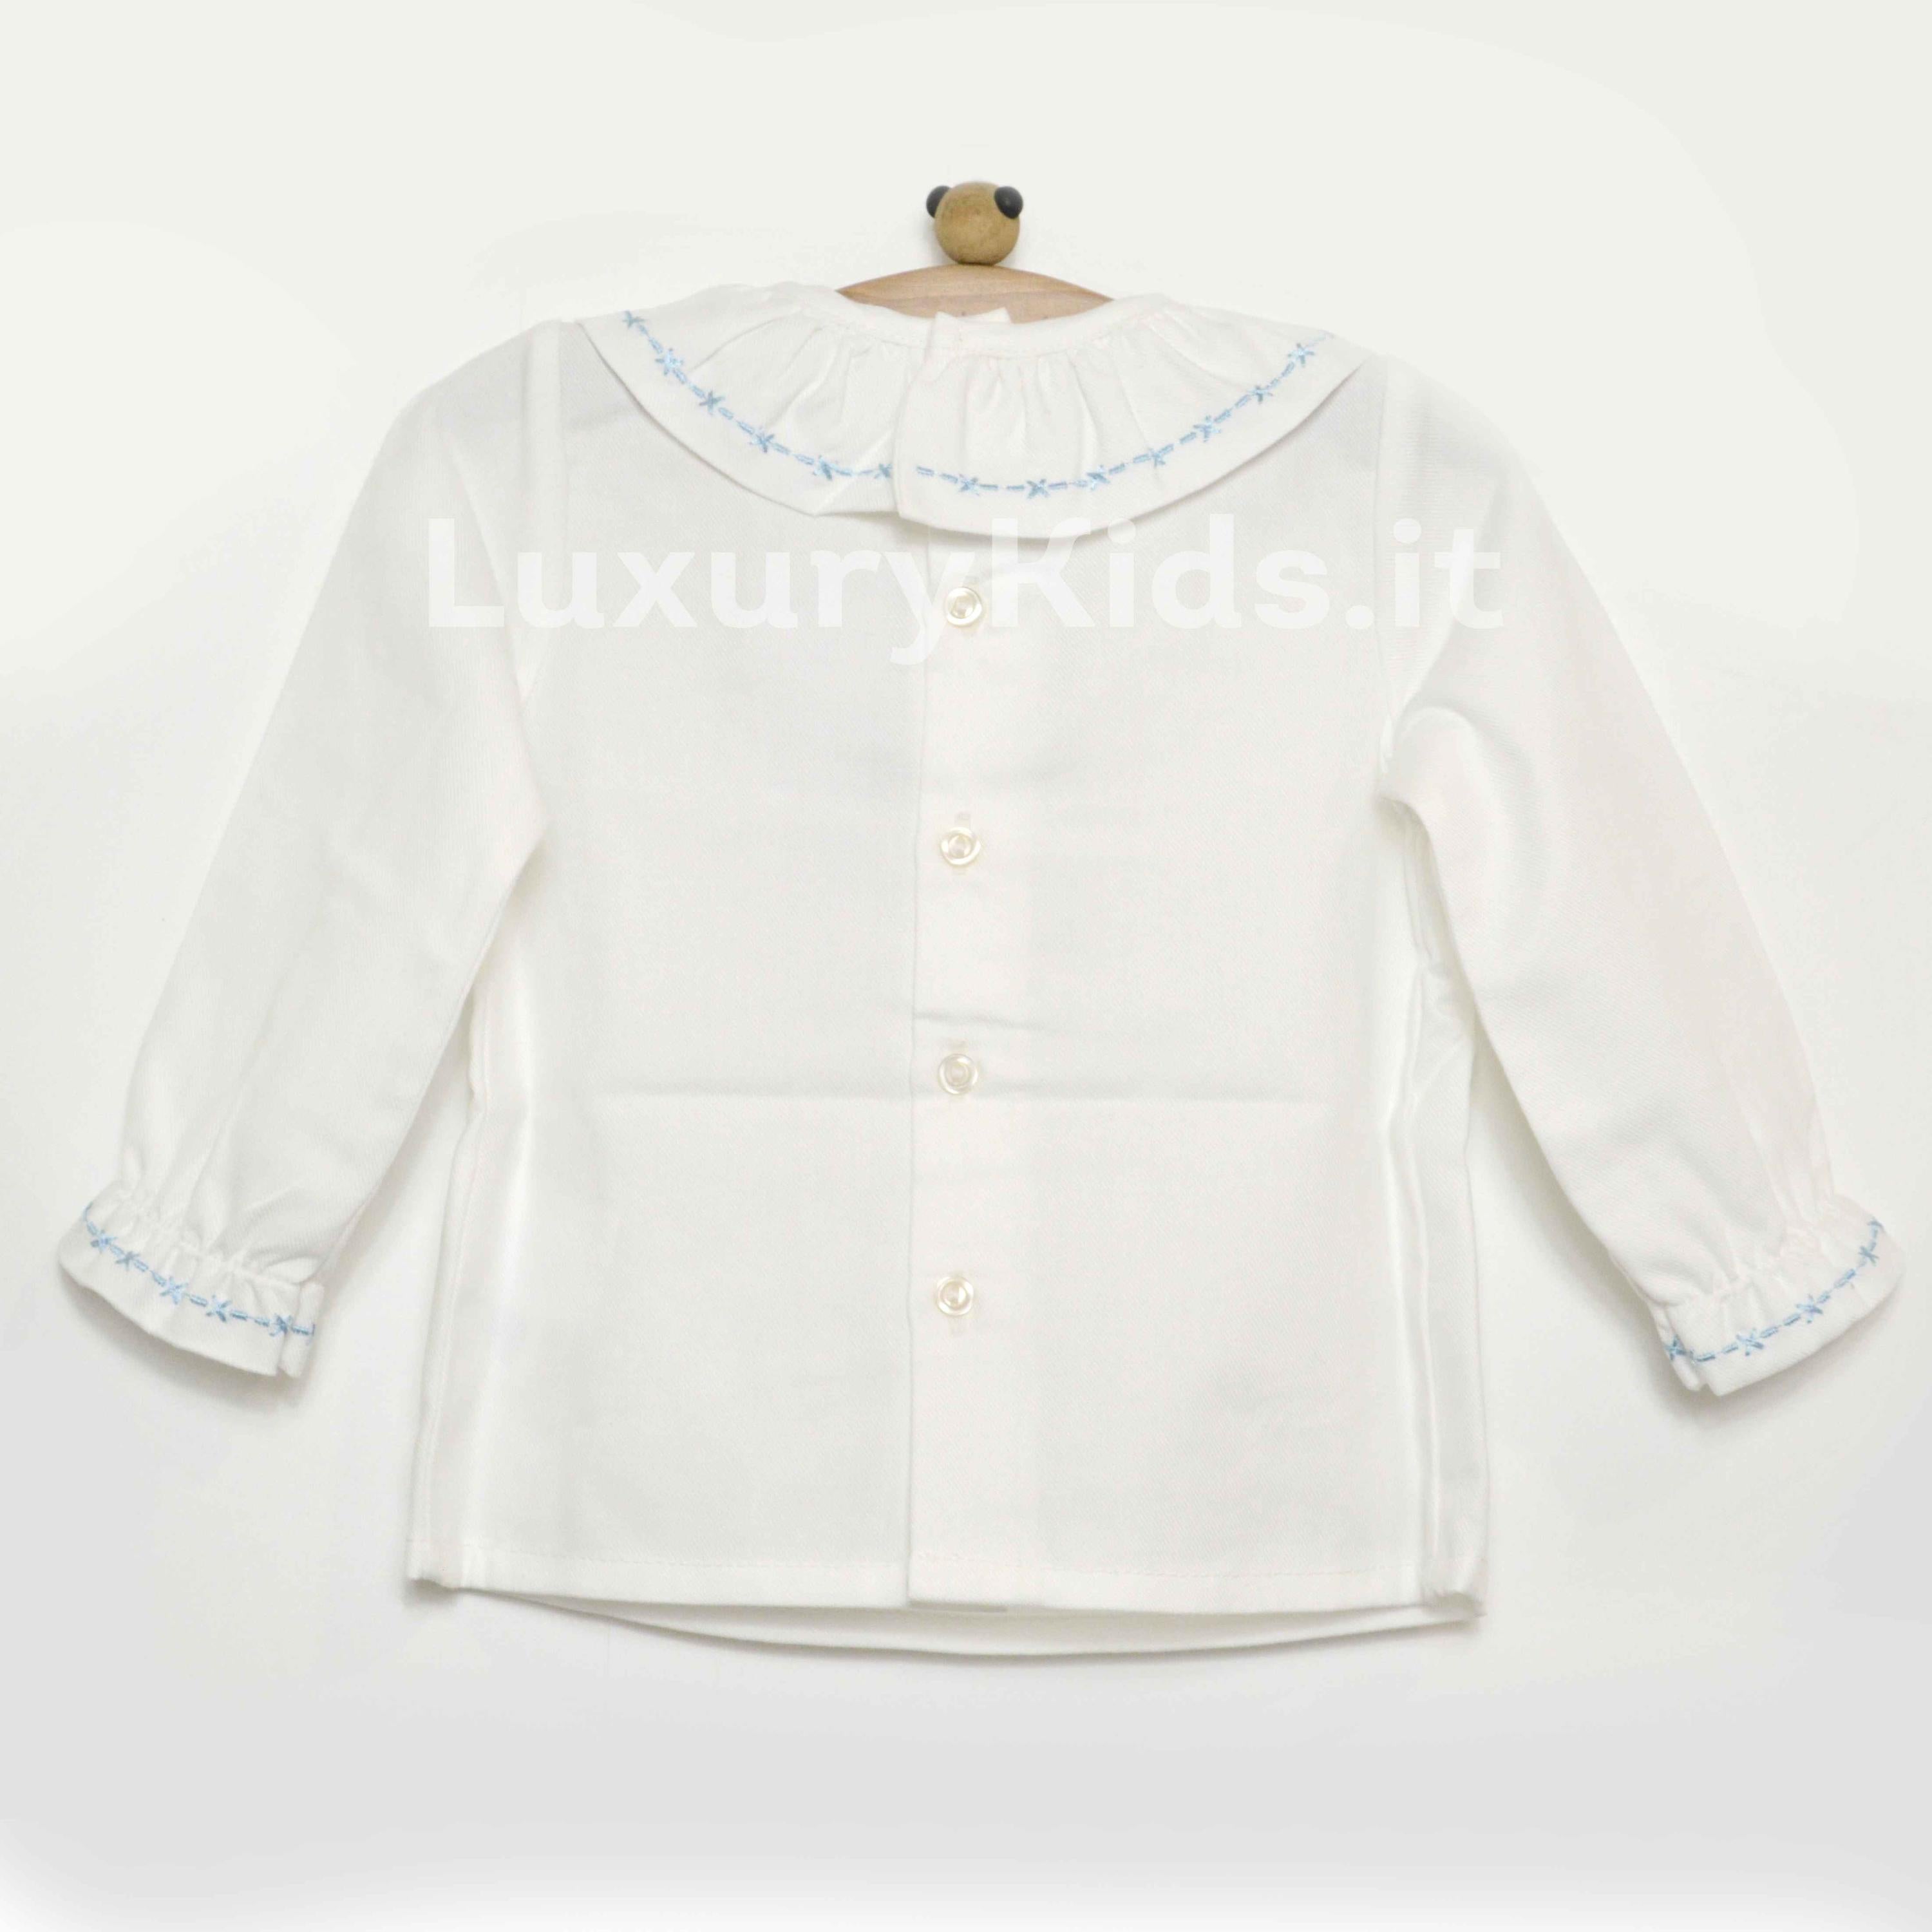 Camicia in Caldo Cotone Manica Lunga con Colletto Rouches Bianco-Celeste Neonata A&J 209A - A&J - LuxuryKids